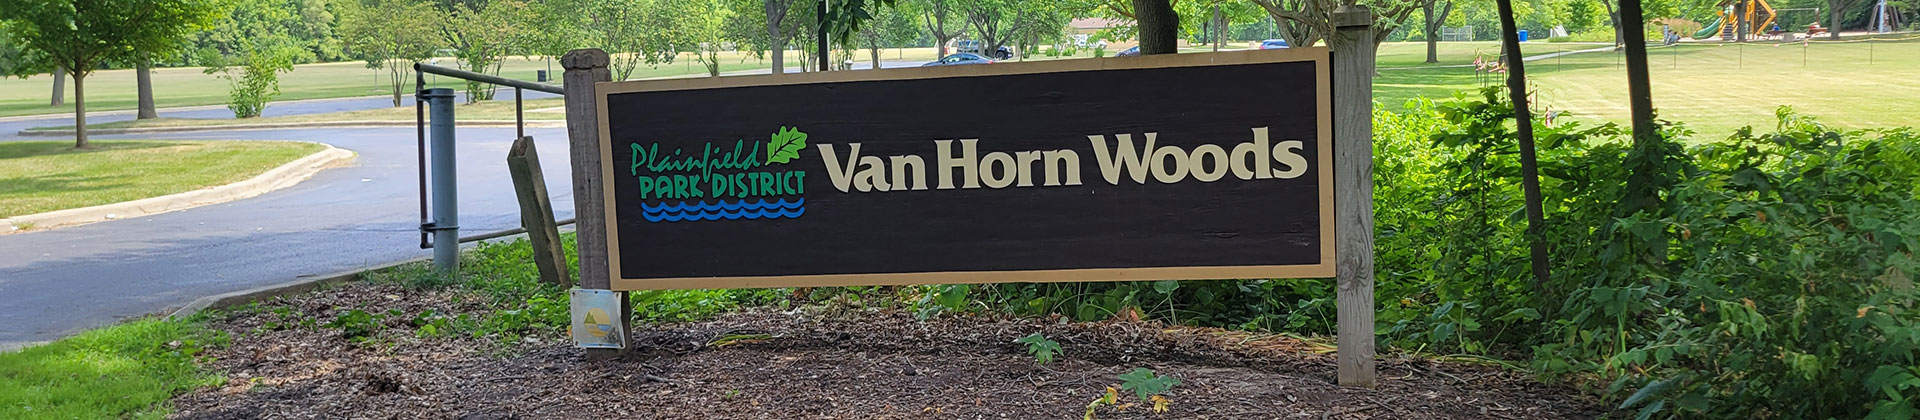 Van Horn Woods